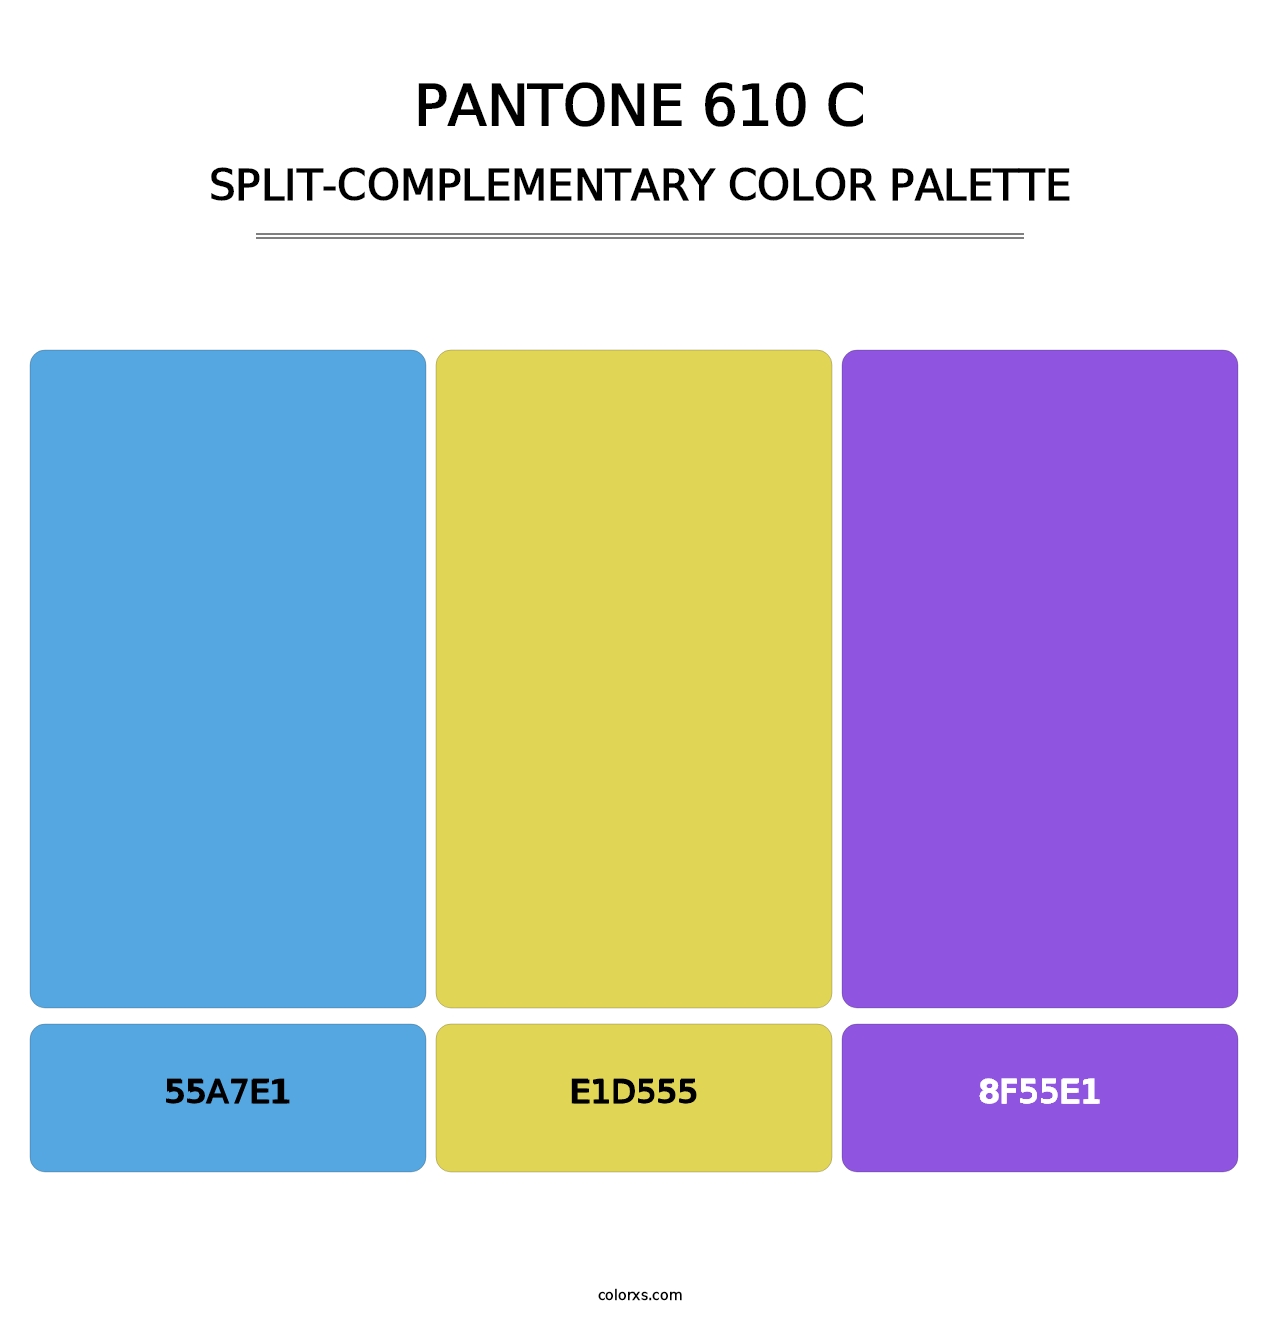 PANTONE 610 C - Split-Complementary Color Palette